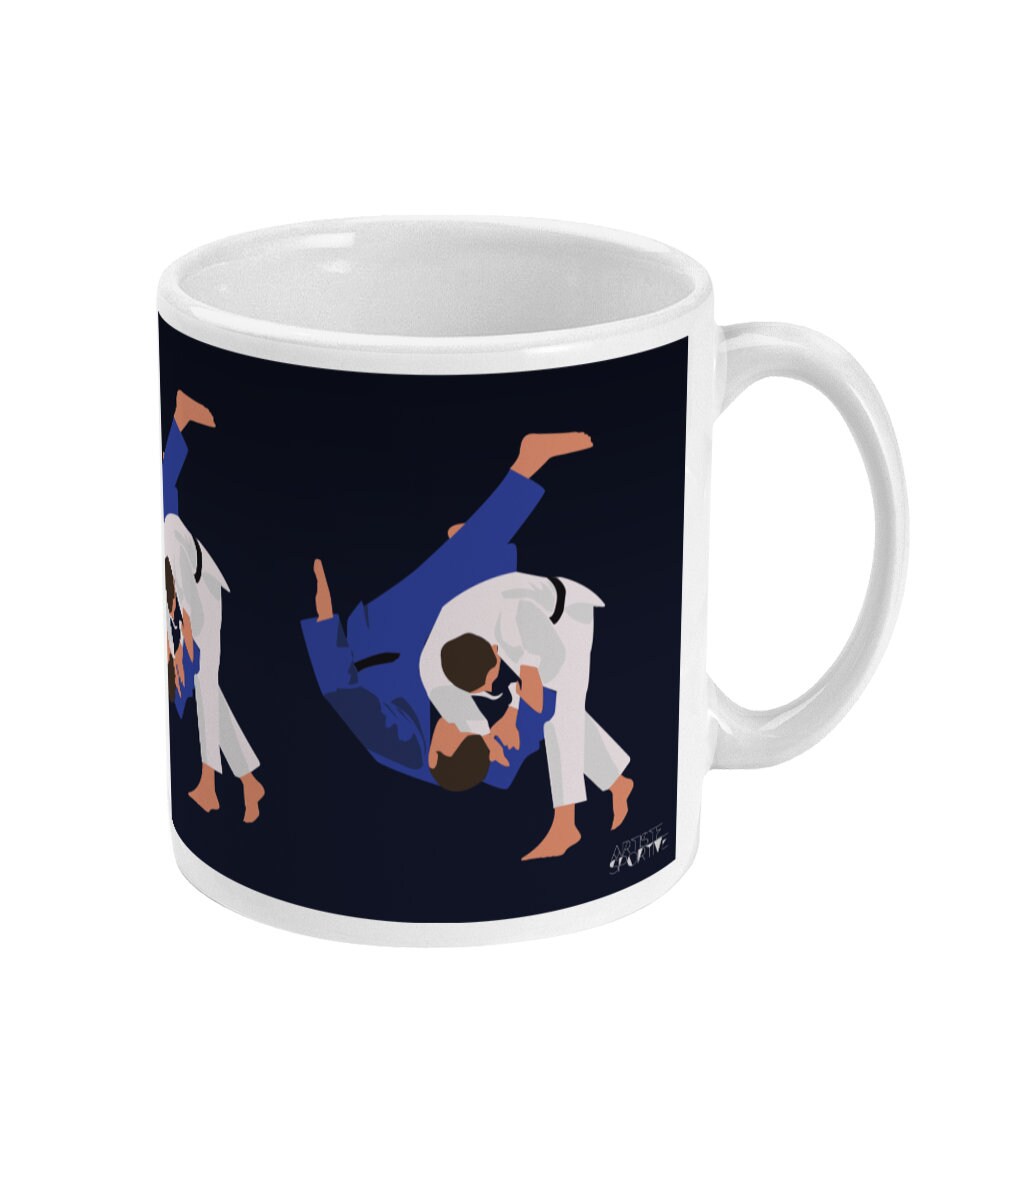 Tasse ou mug de judo "Le judoka" - Personnalisable